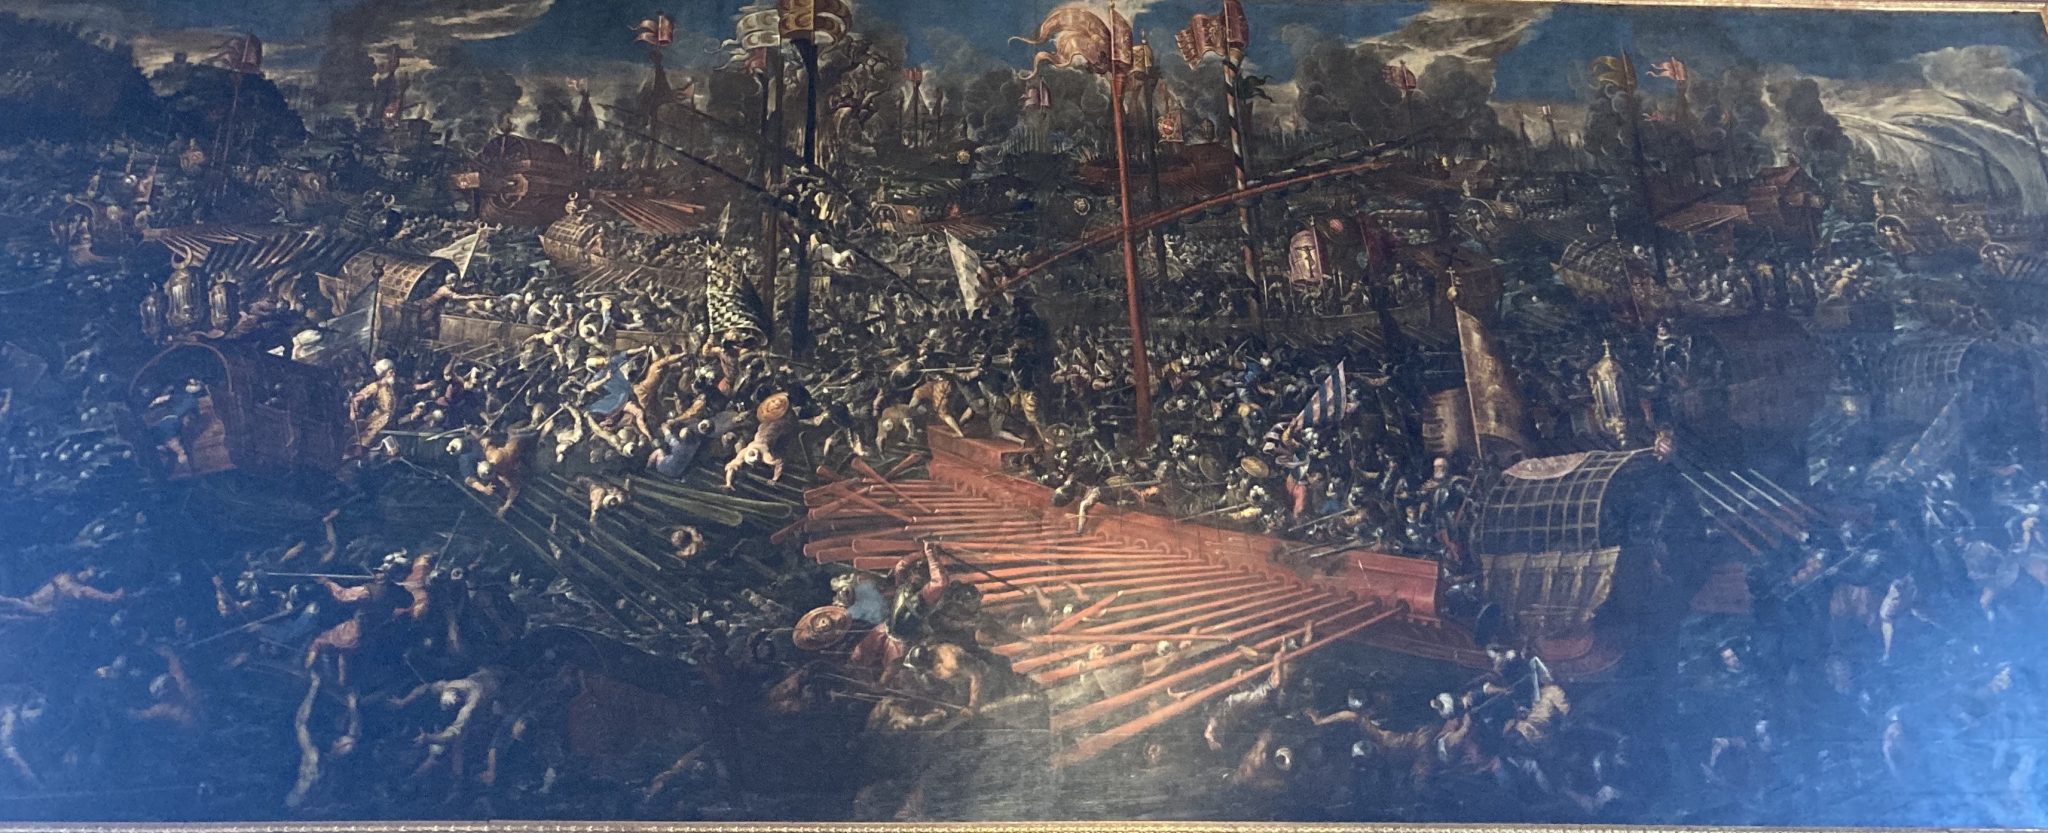 Battaglia di Lepanto di Andrea Michieli  a PAlazzo Ducale di Venezia